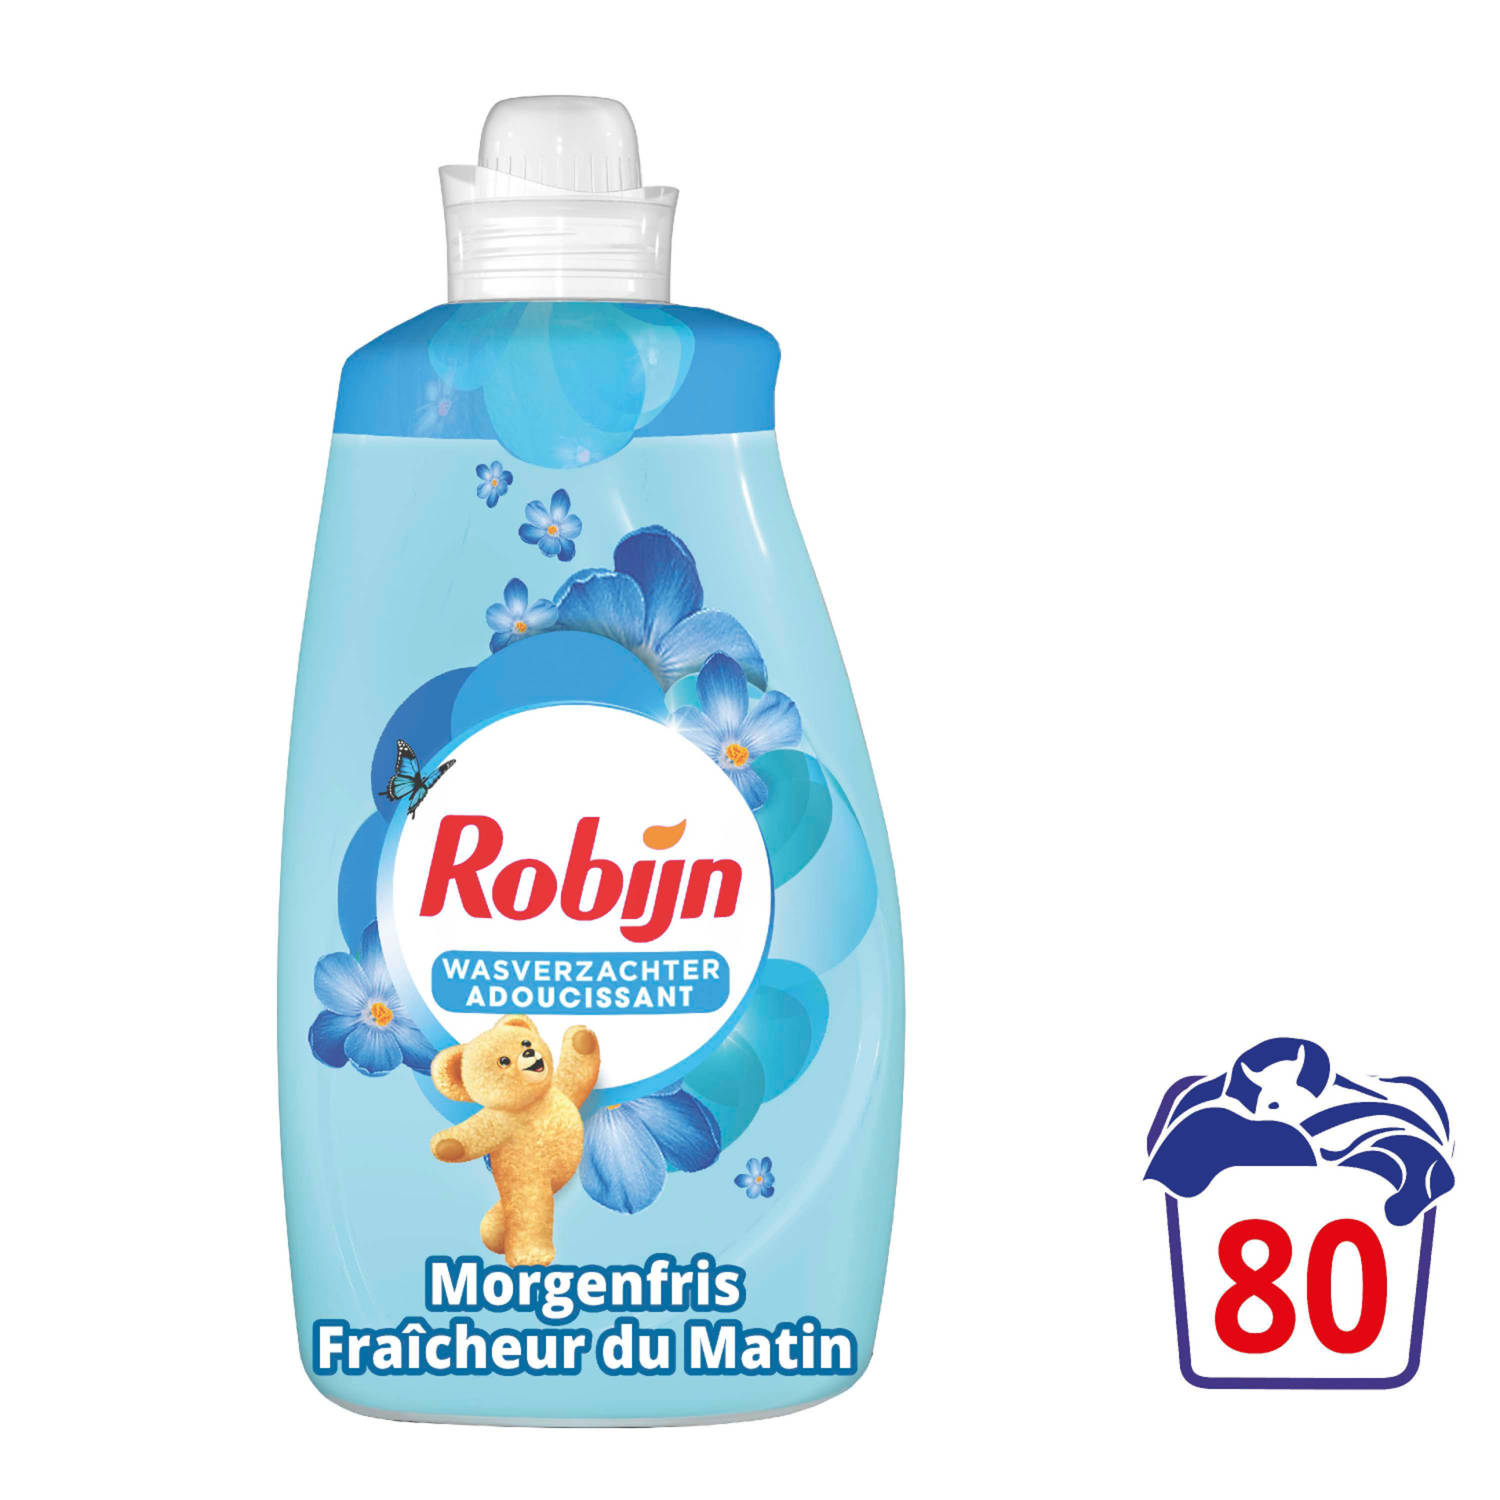 Robijn Wasverzachter - Morgenfris - Voordeelverpakking 4 x 80 wasbeurten